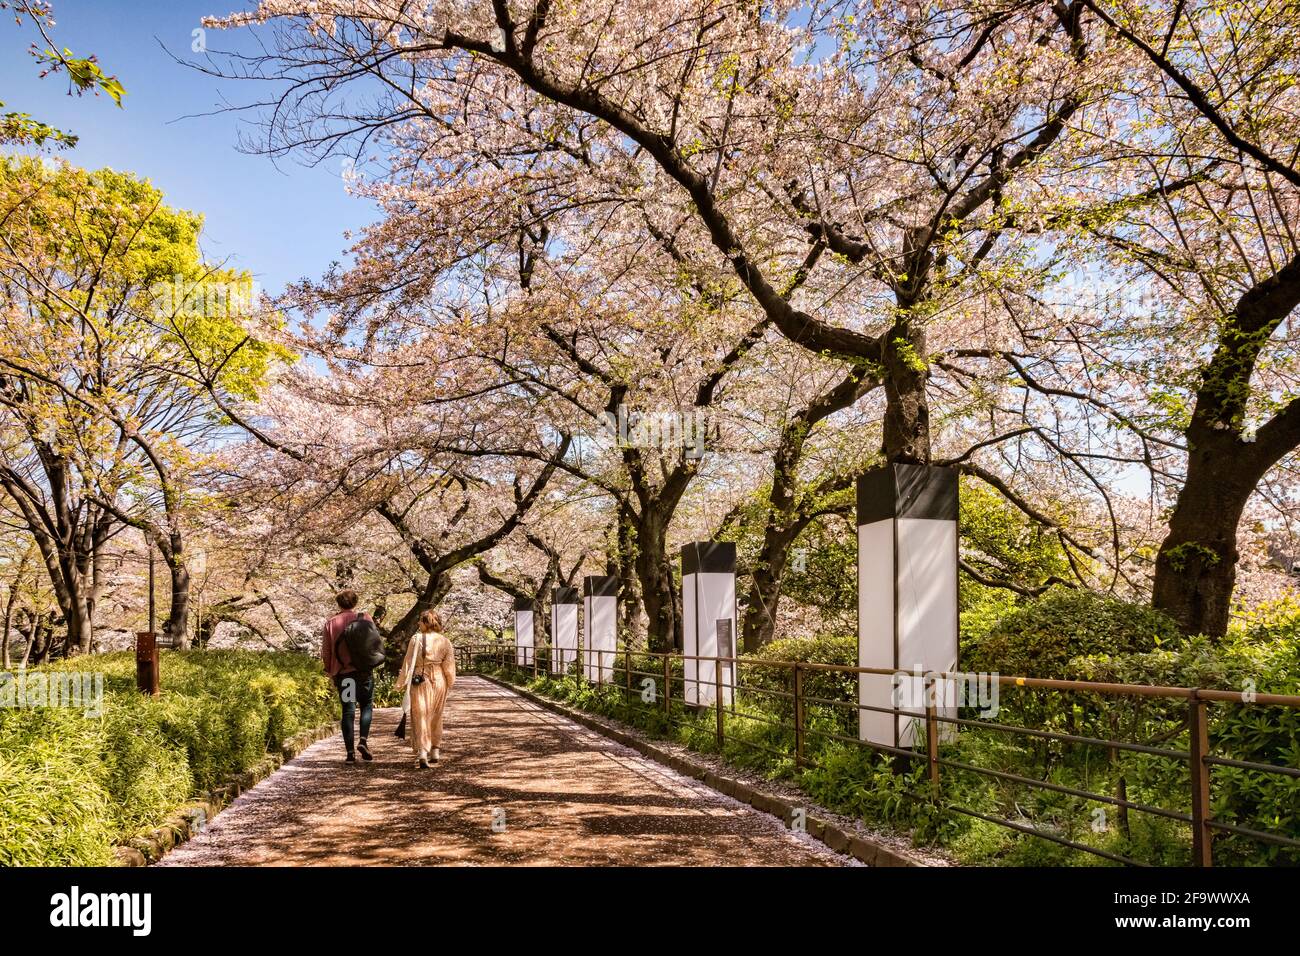 9 aprile 2019: Tokyo, Giappone - camminando accanto al fossato del Palazzo Imperiale, Tokyo, nella stagione della fioritura dei ciliegi. Foto Stock